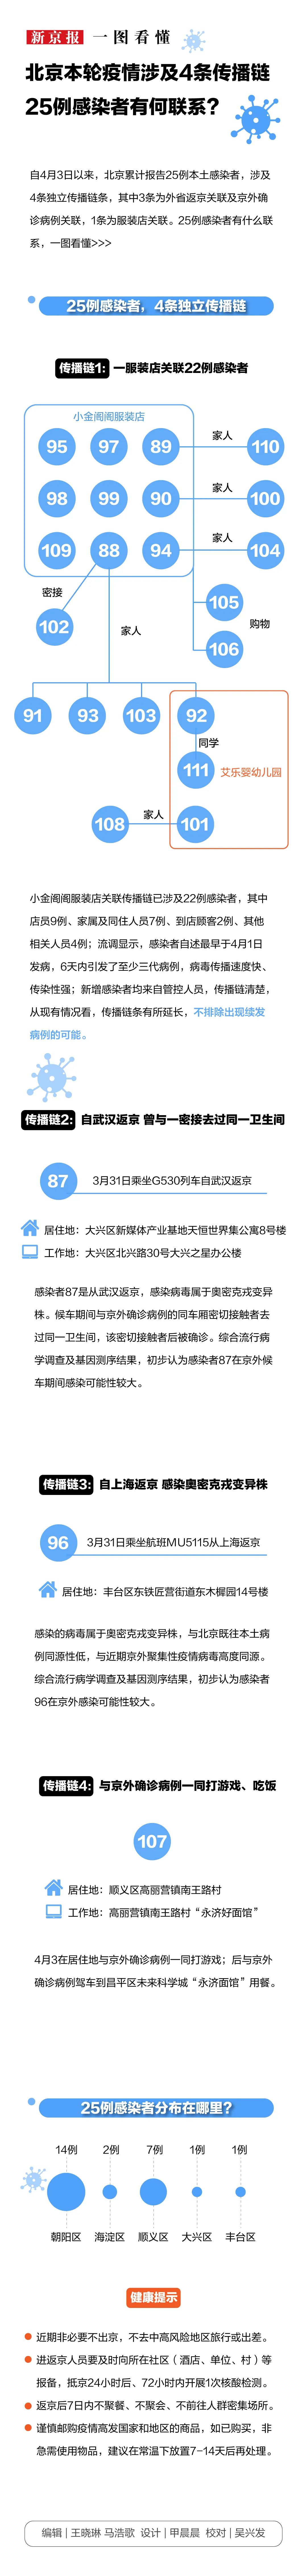 北京本轮疫情涉4条传播链 25例感染者有何联系？